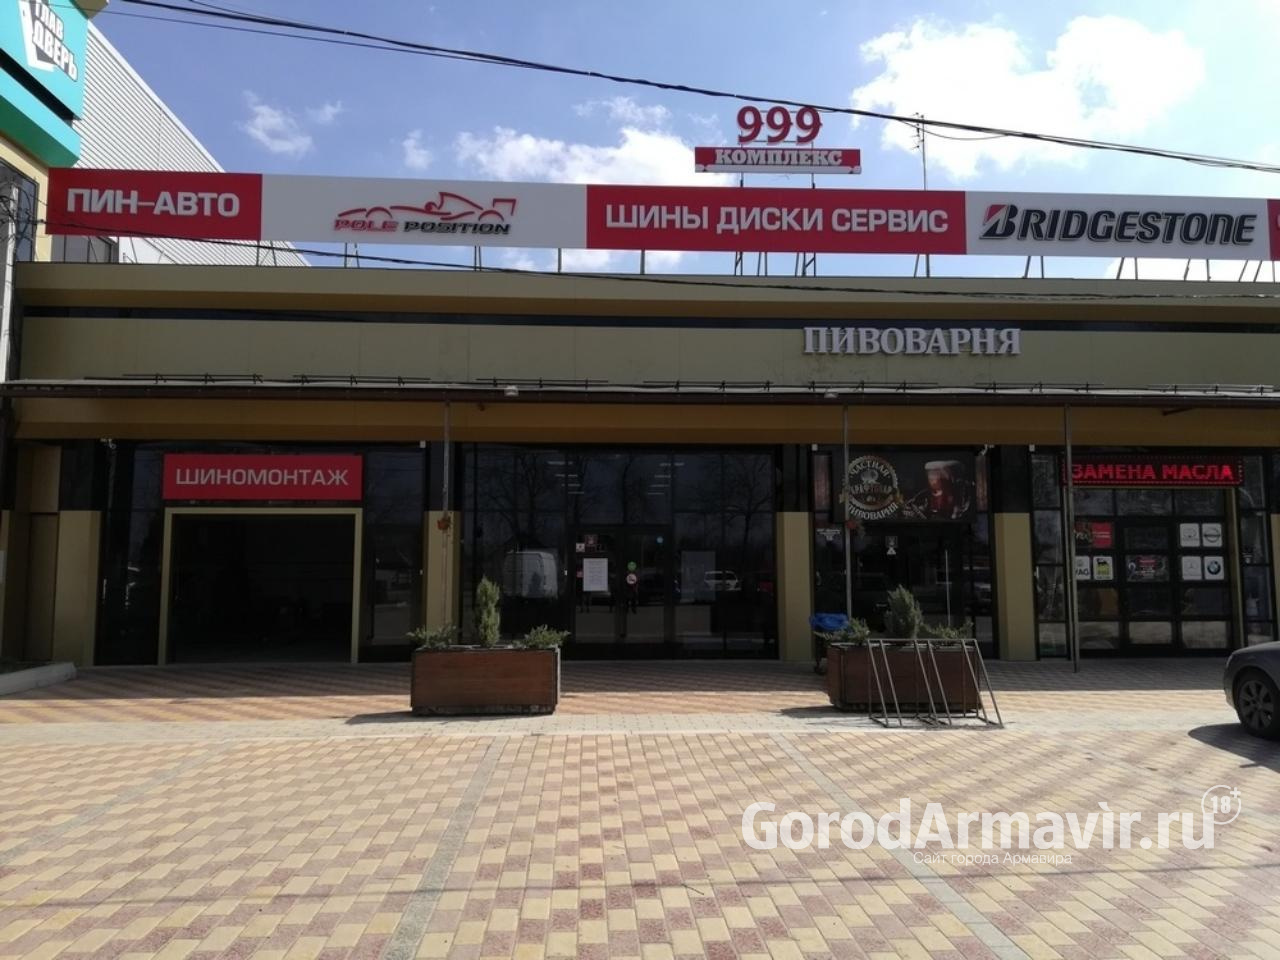 Бесплатный монтаж и хранение шин предлагает клиентам центр «Пин Авто» в Армавире